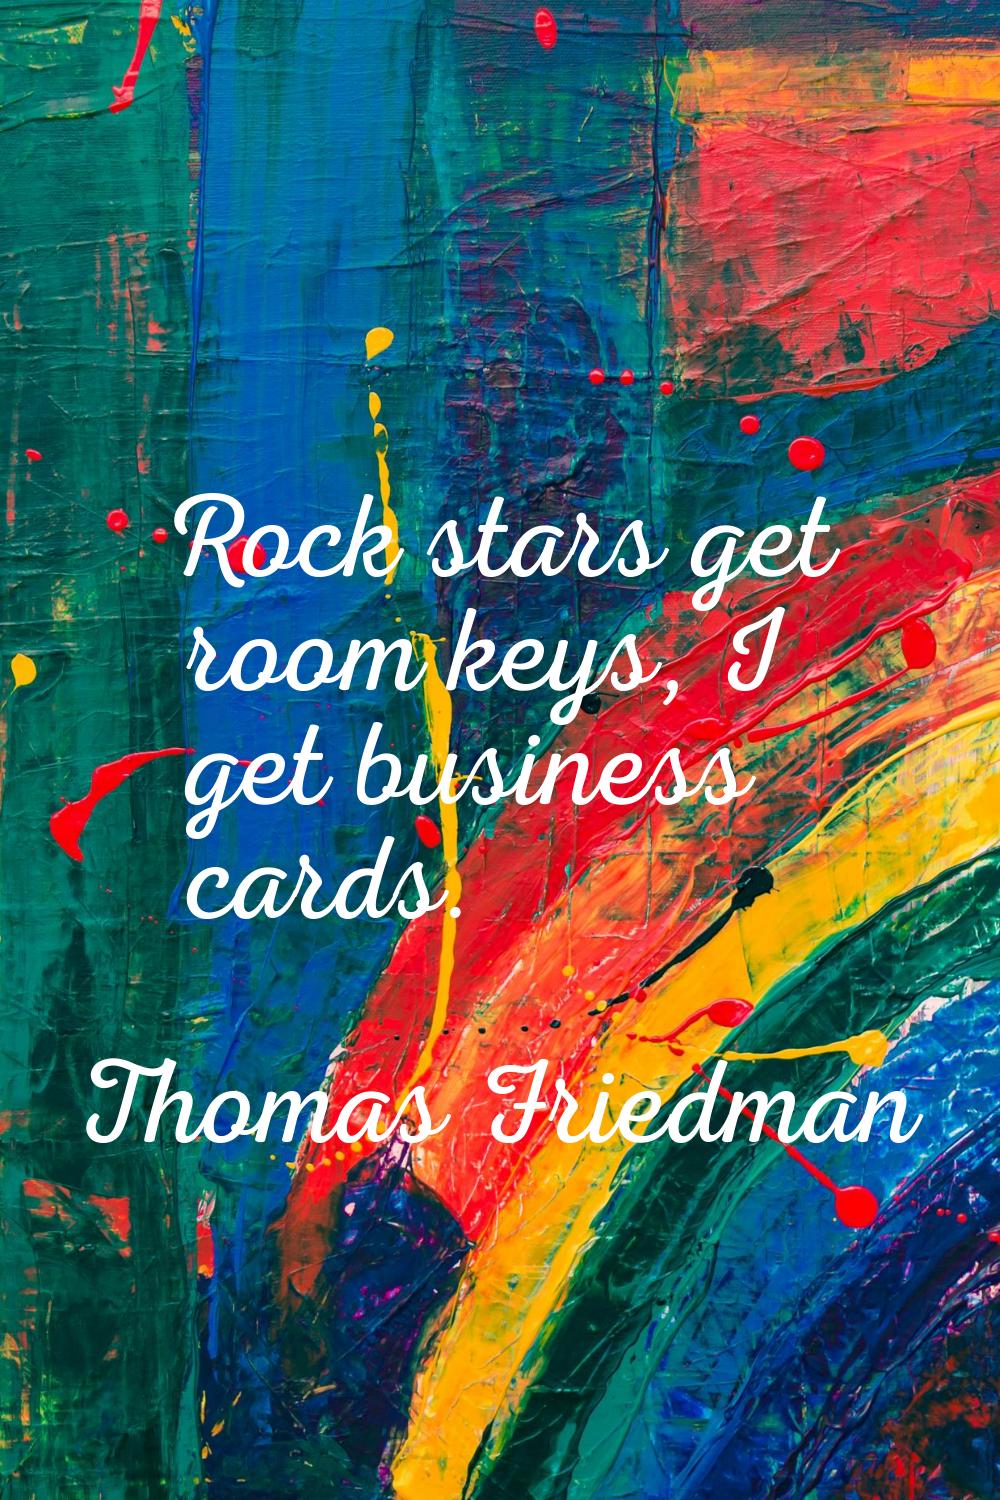 Rock stars get room keys, I get business cards.